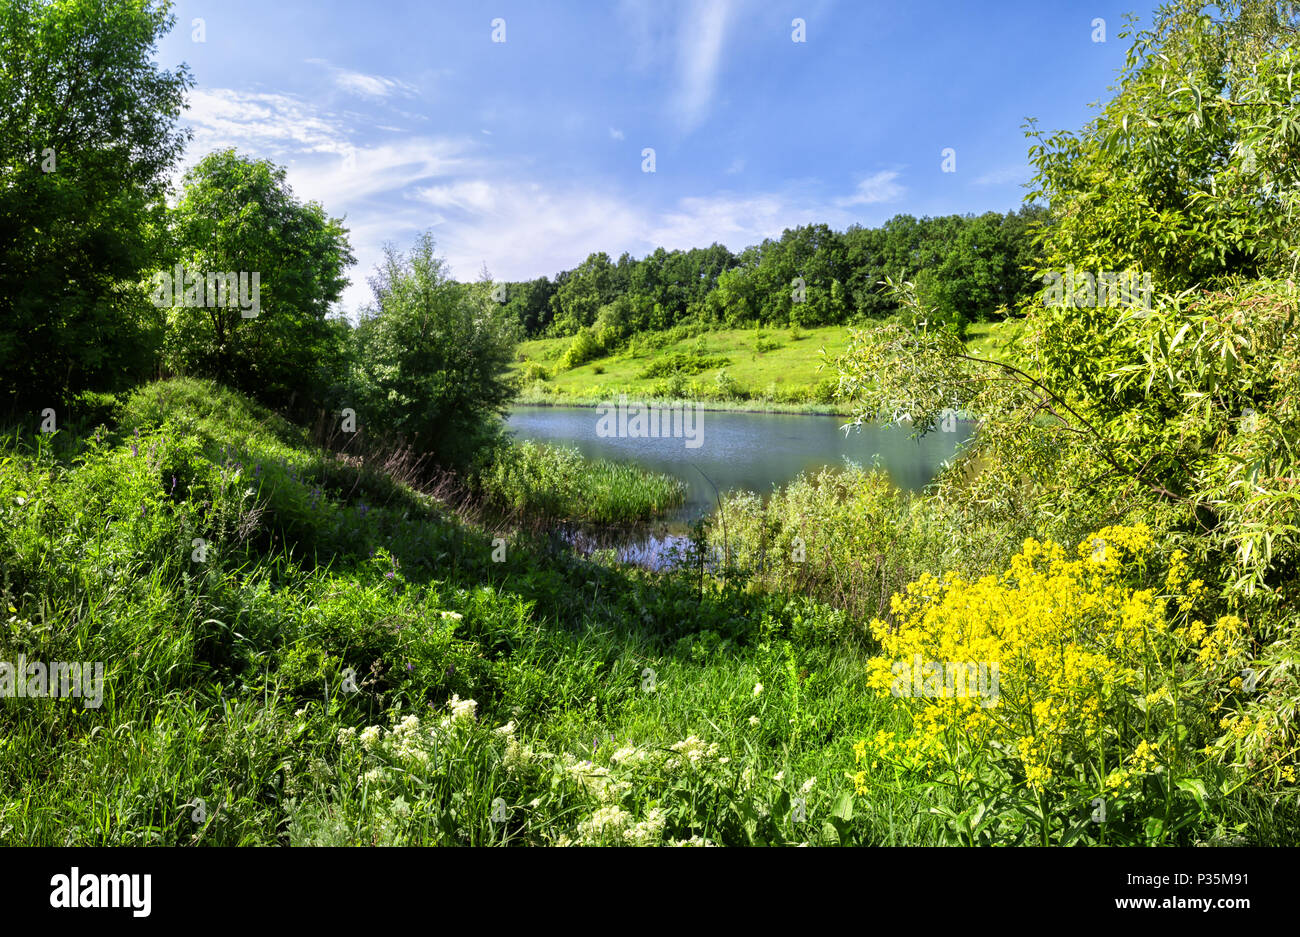 Rivière avec des fleurs jaunes et une herbe verte. Paysage d'été. Le concept de la nature et la solitude. Banque D'Images